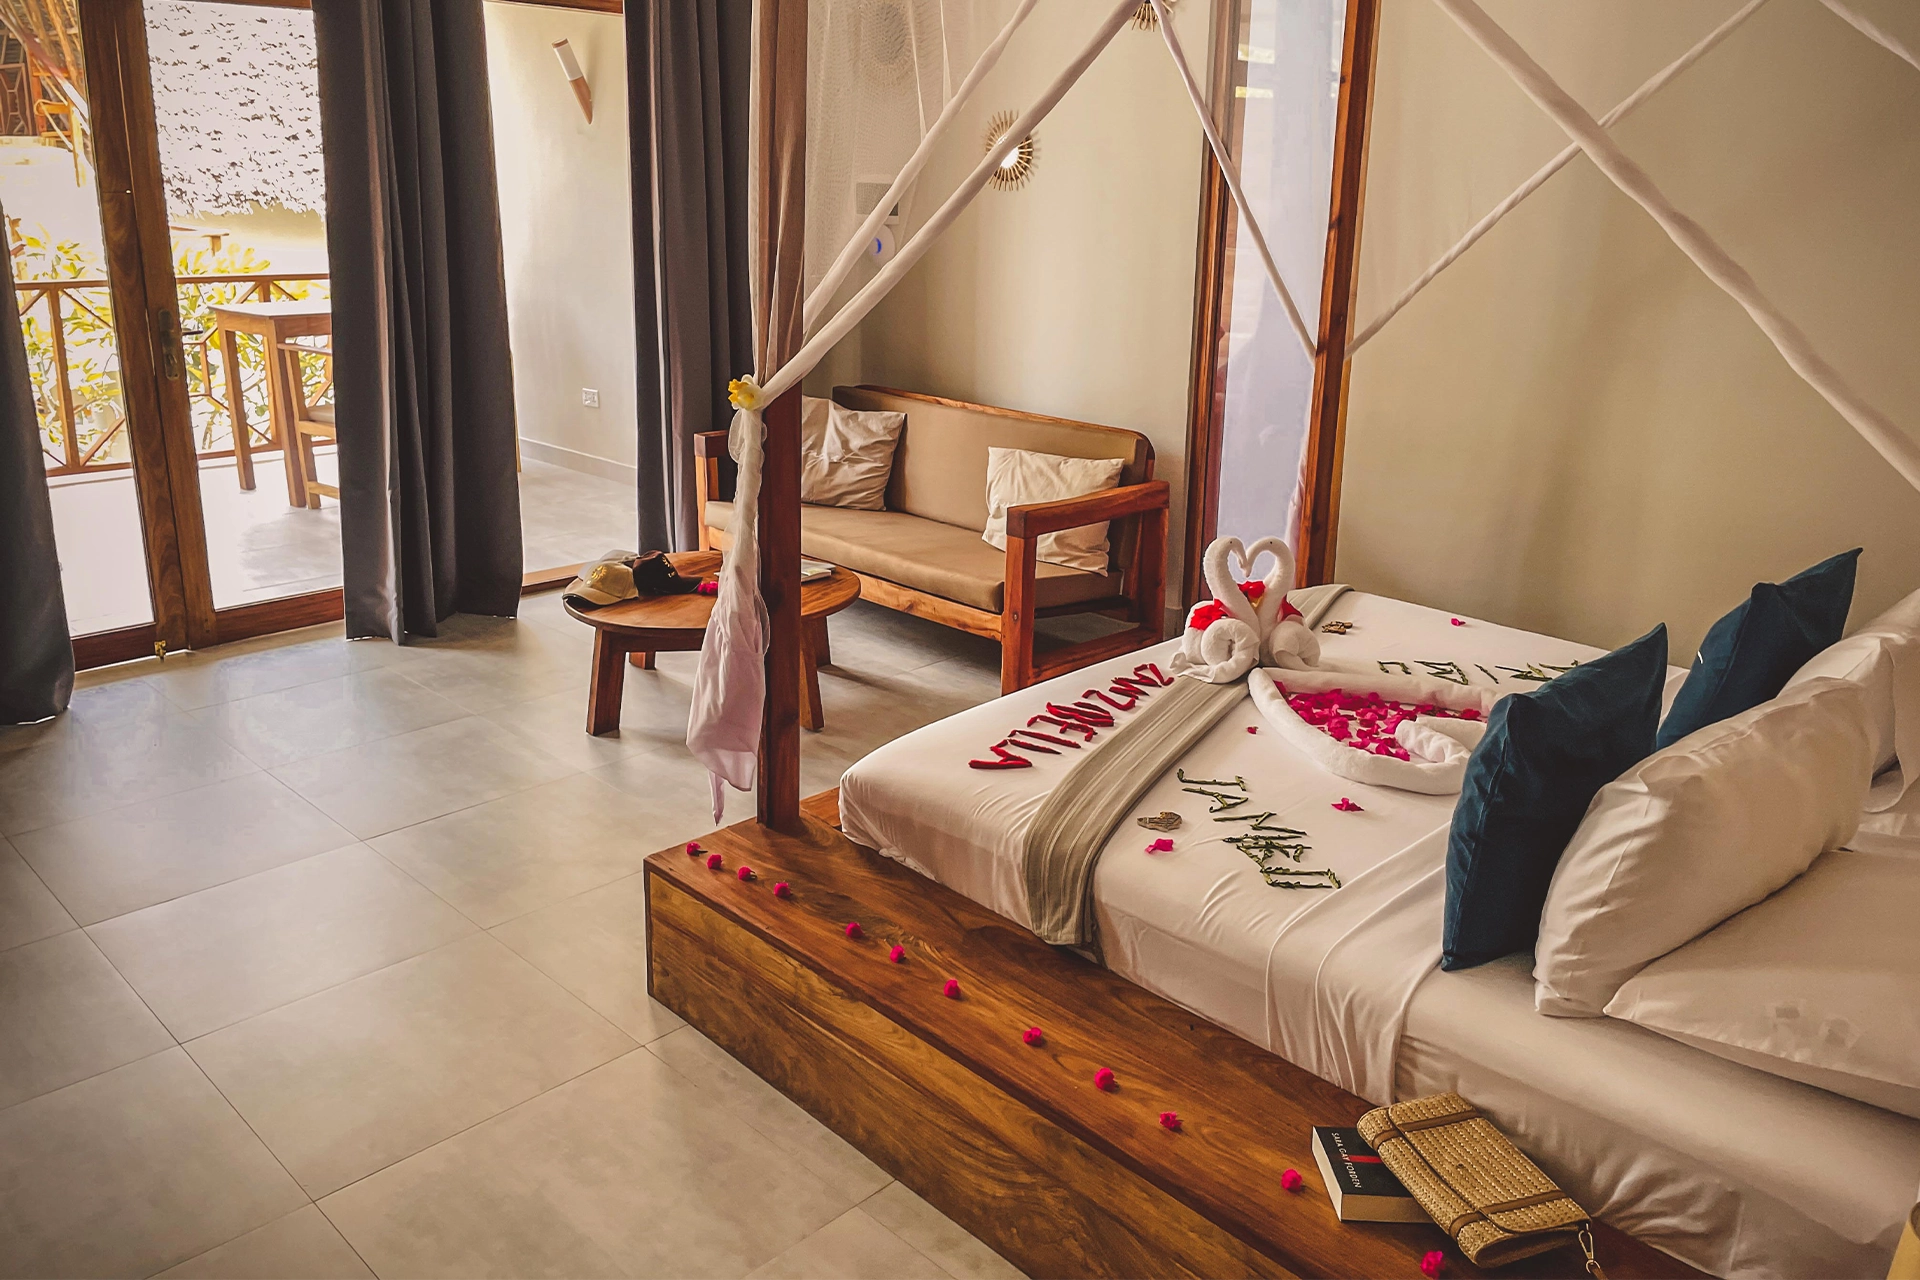 Pokój hotelowy z drewnianymi meblami – wygodną kanapą, stolikiem kawowym i ogromnym, przyozdobionym kwiatami łóżkiem.